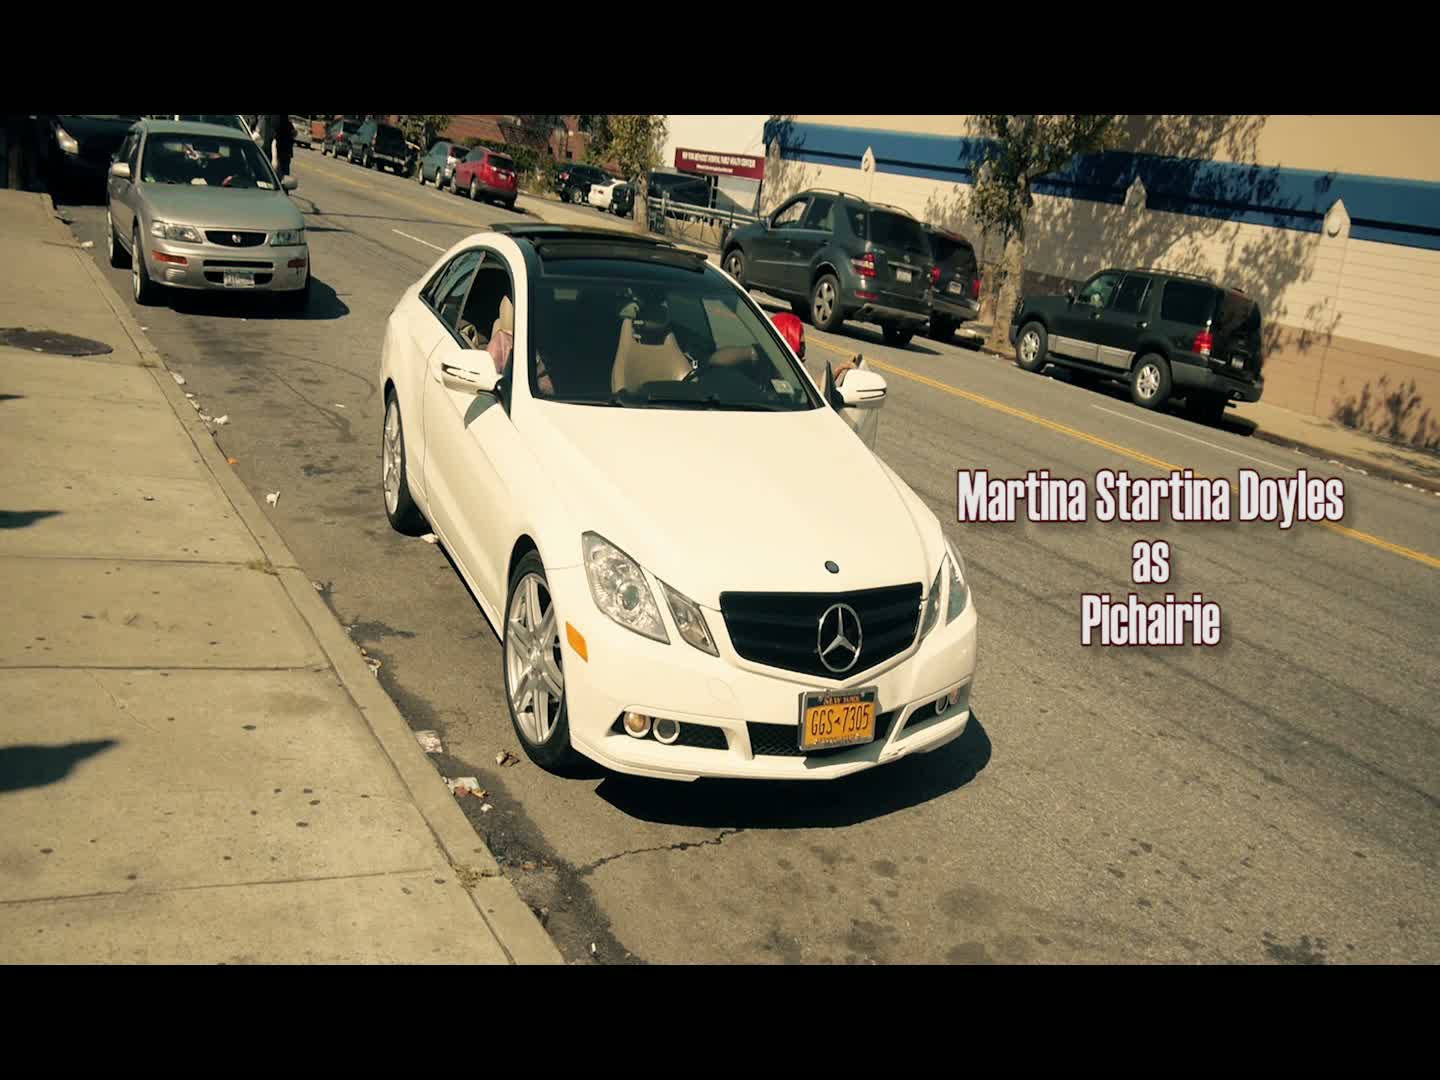 Jamaican Mafia Trailer 2015